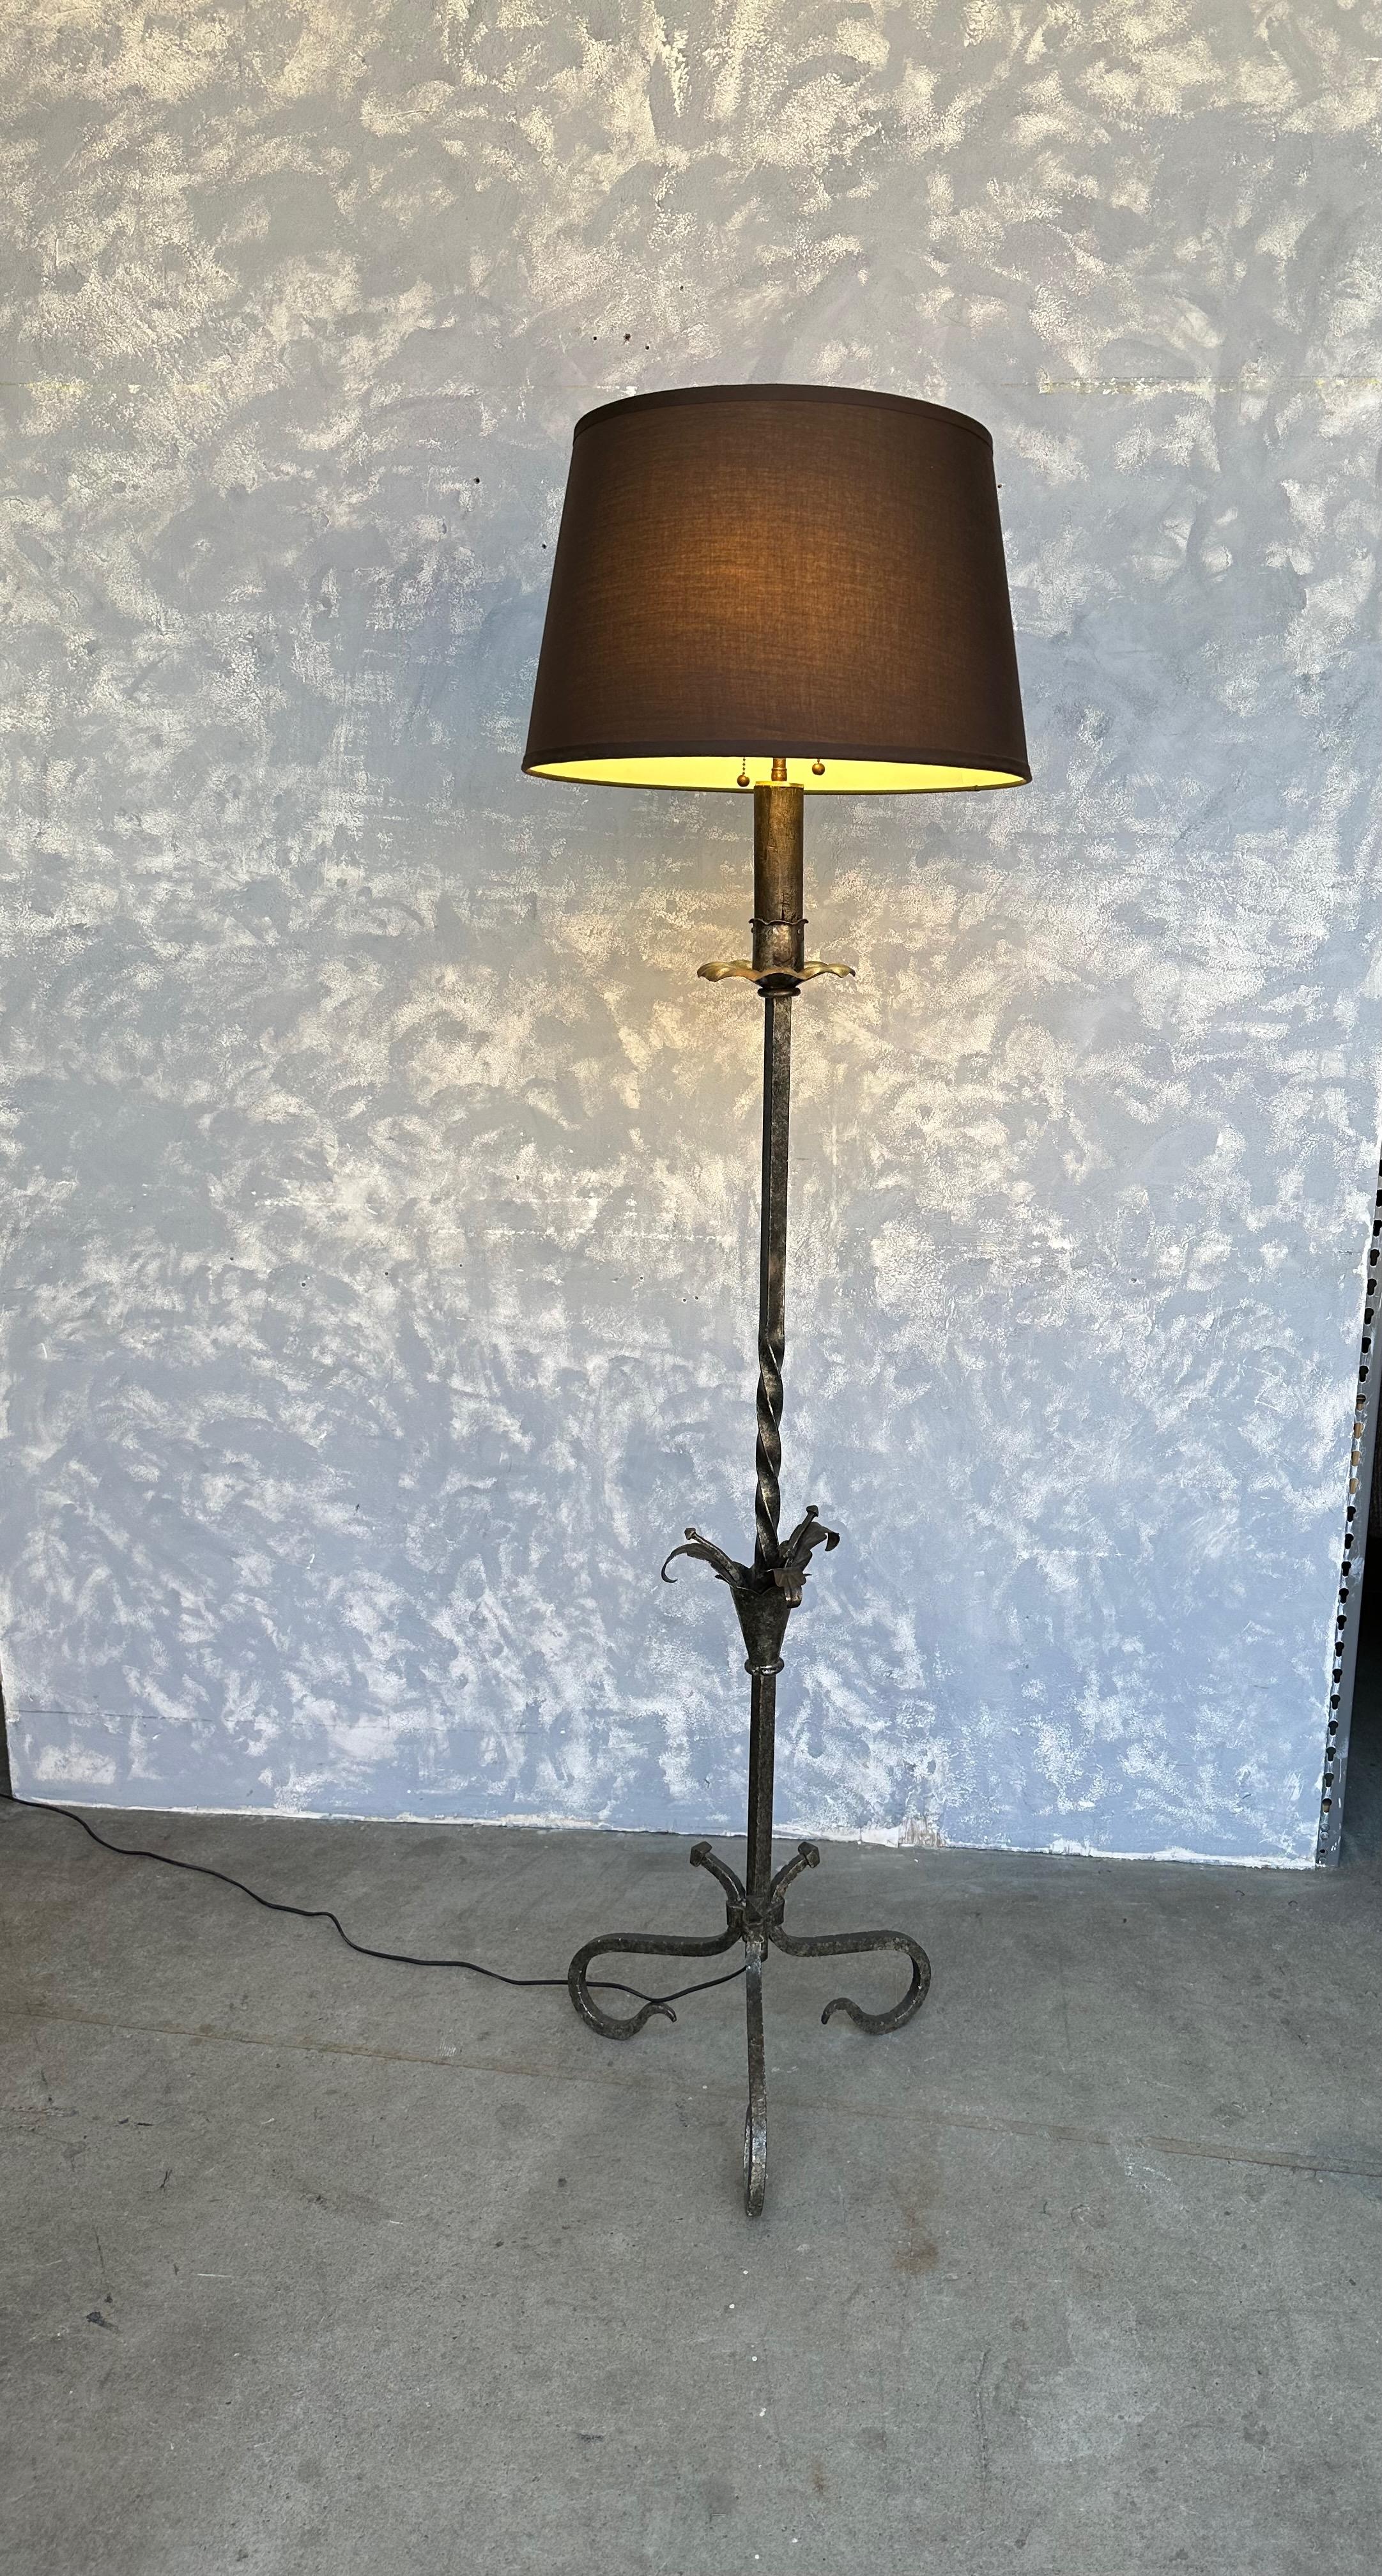 Un captivant lampadaire espagnol en fer argenté avec une base à volutes. Cette pièce unique, fabriquée en Espagne dans les années 1950, témoigne d'un savoir-faire inégalé et d'un design exceptionnel qui embellira votre espace pendant des années. La